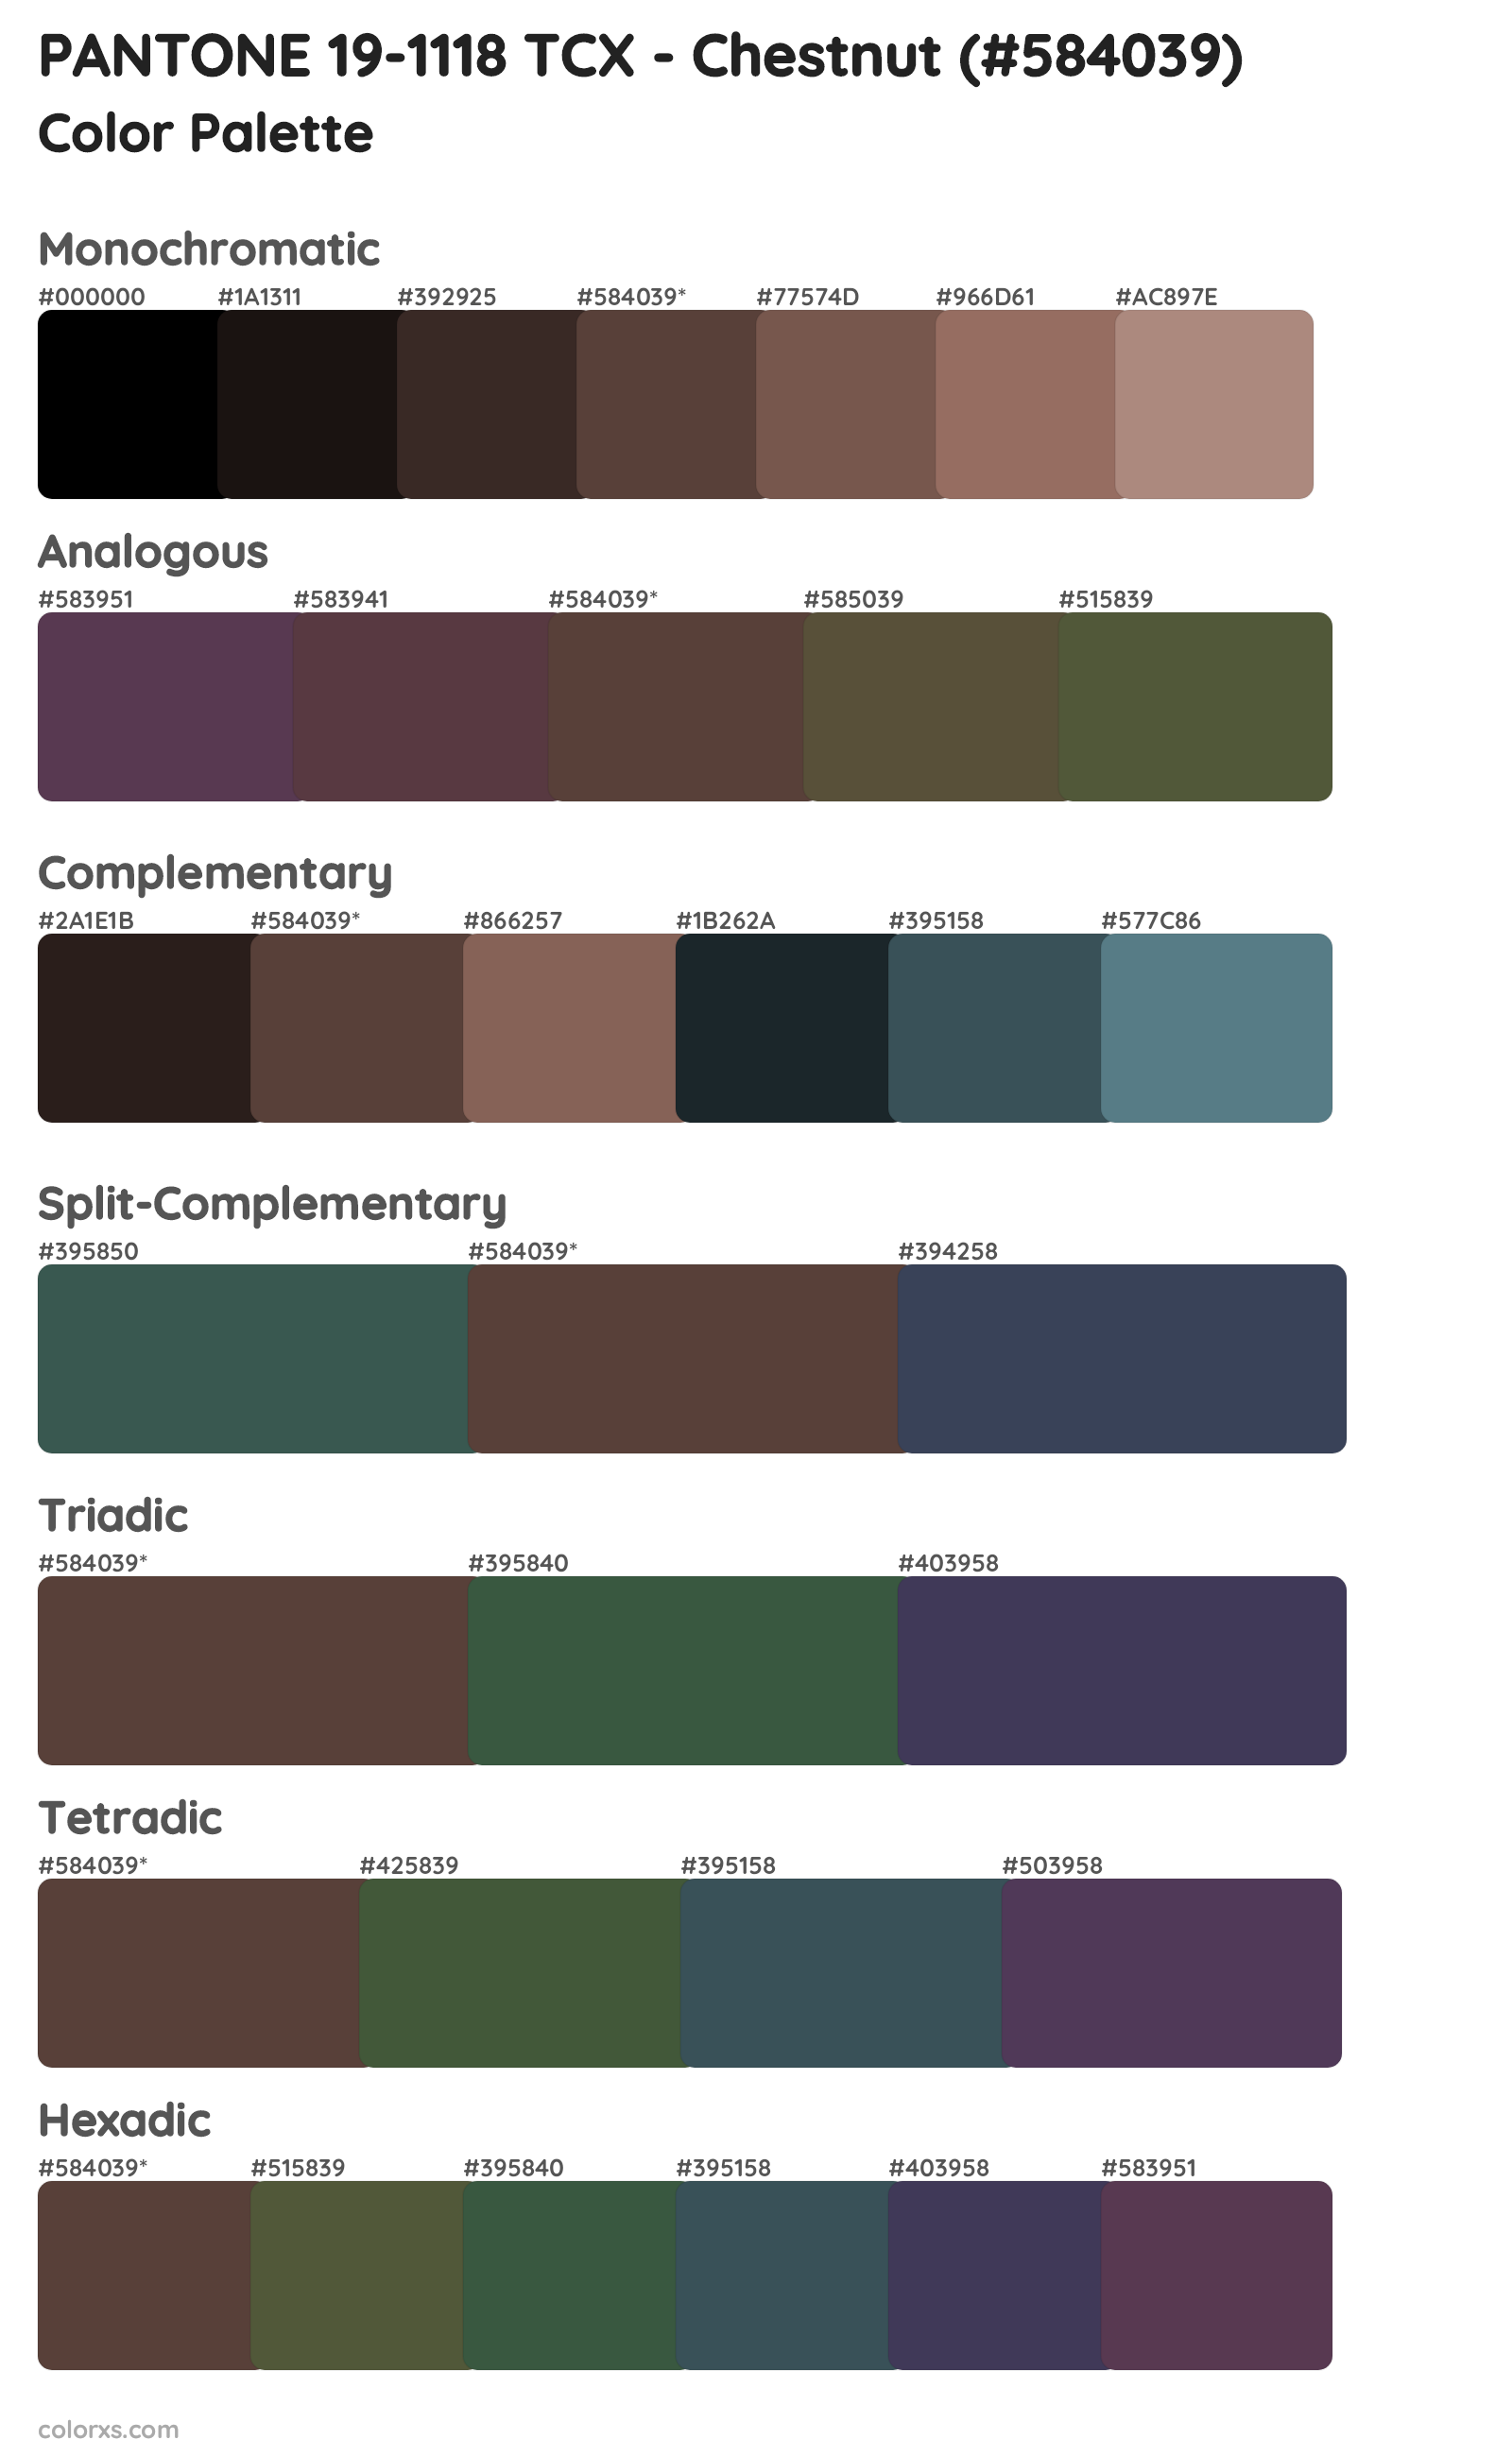 PANTONE 19-1118 TCX - Chestnut Color Scheme Palettes